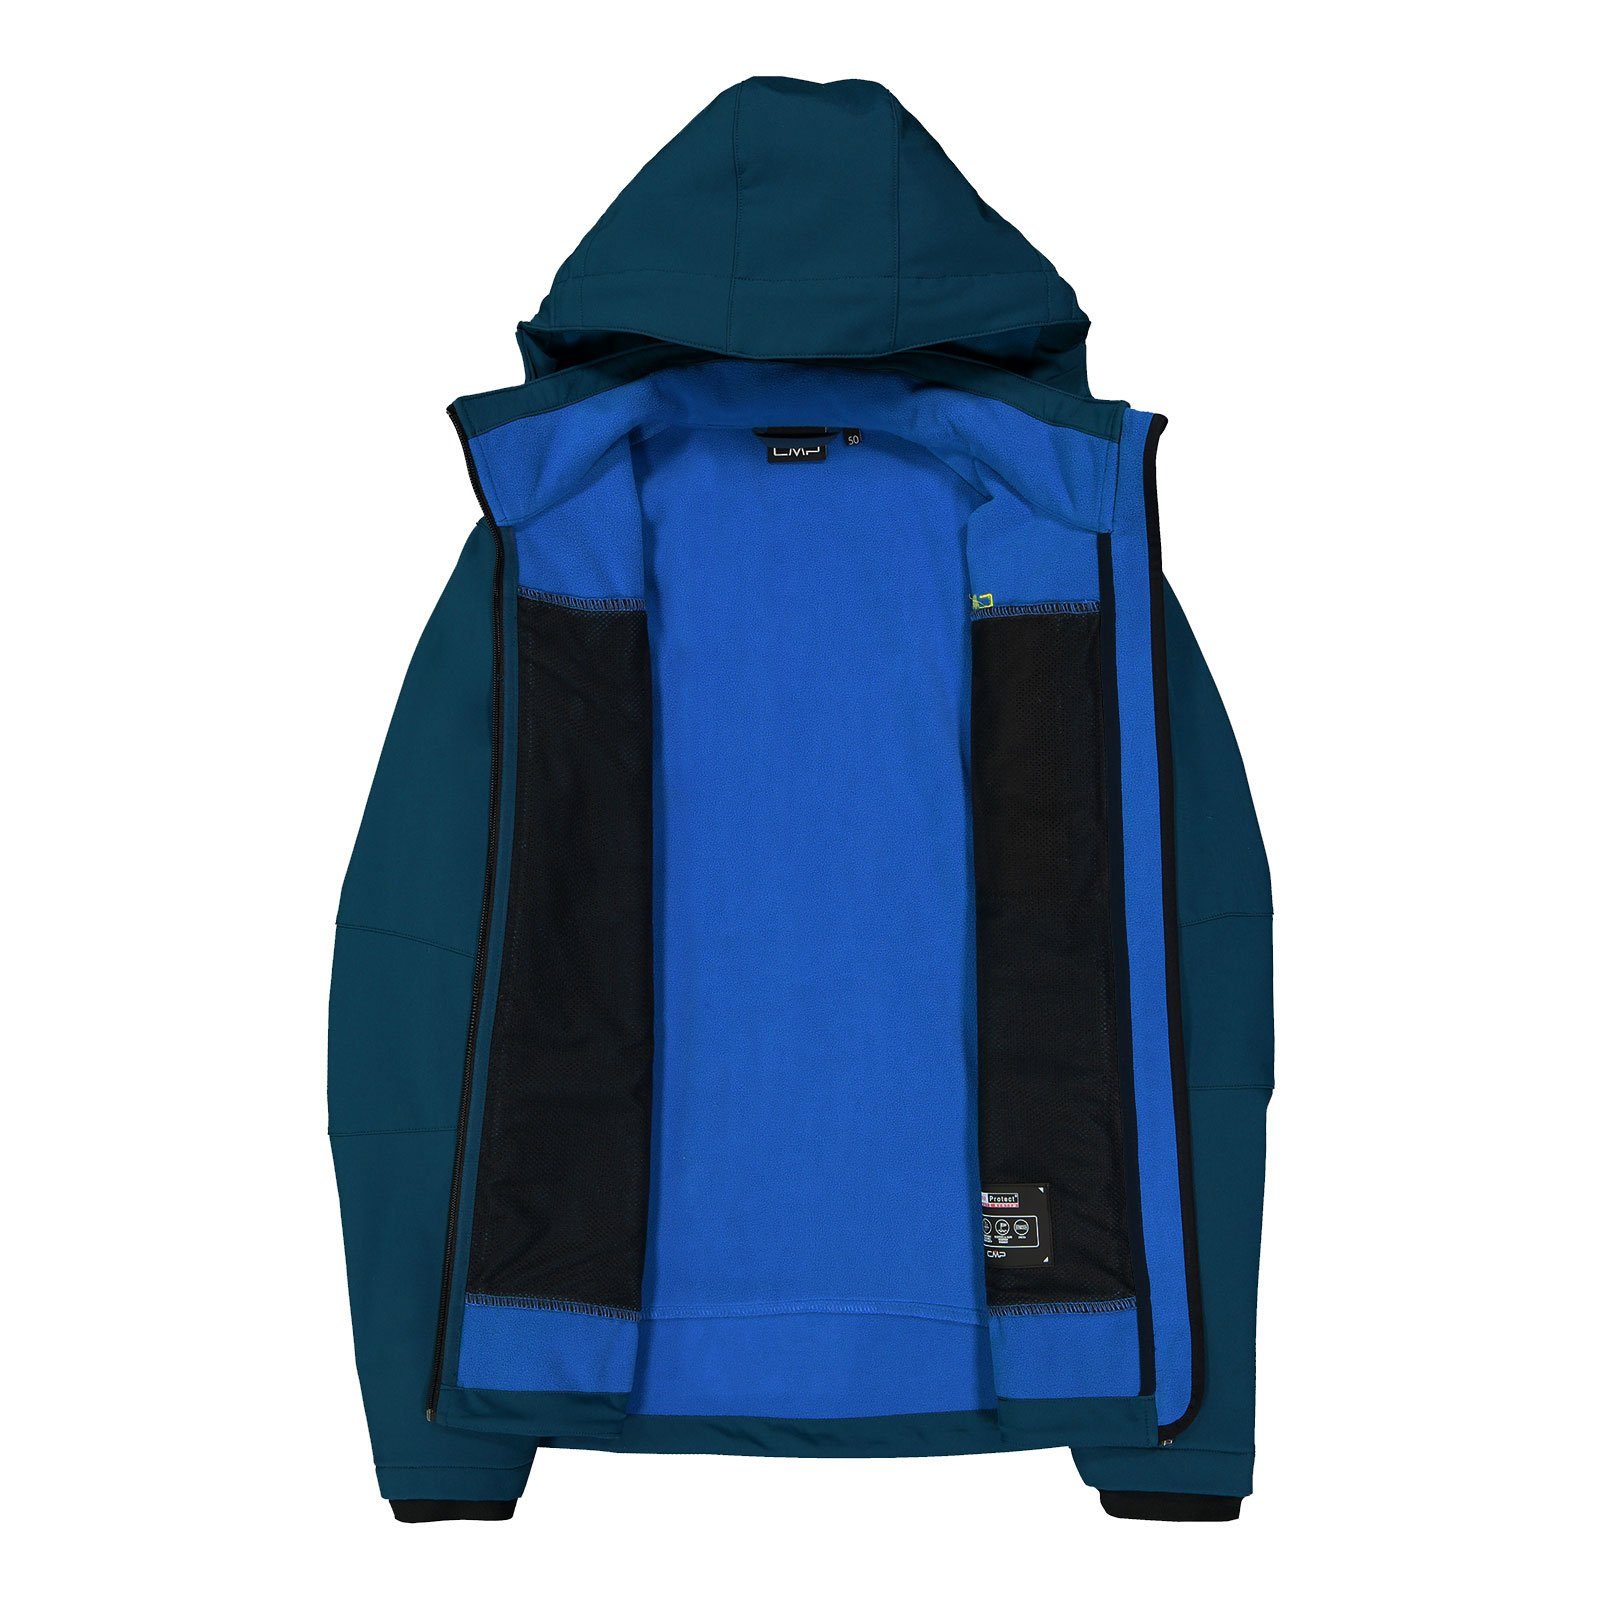 M928 Jacket Napoleontasche mit Softshelljacke Hood Man ink CMP blue Zip